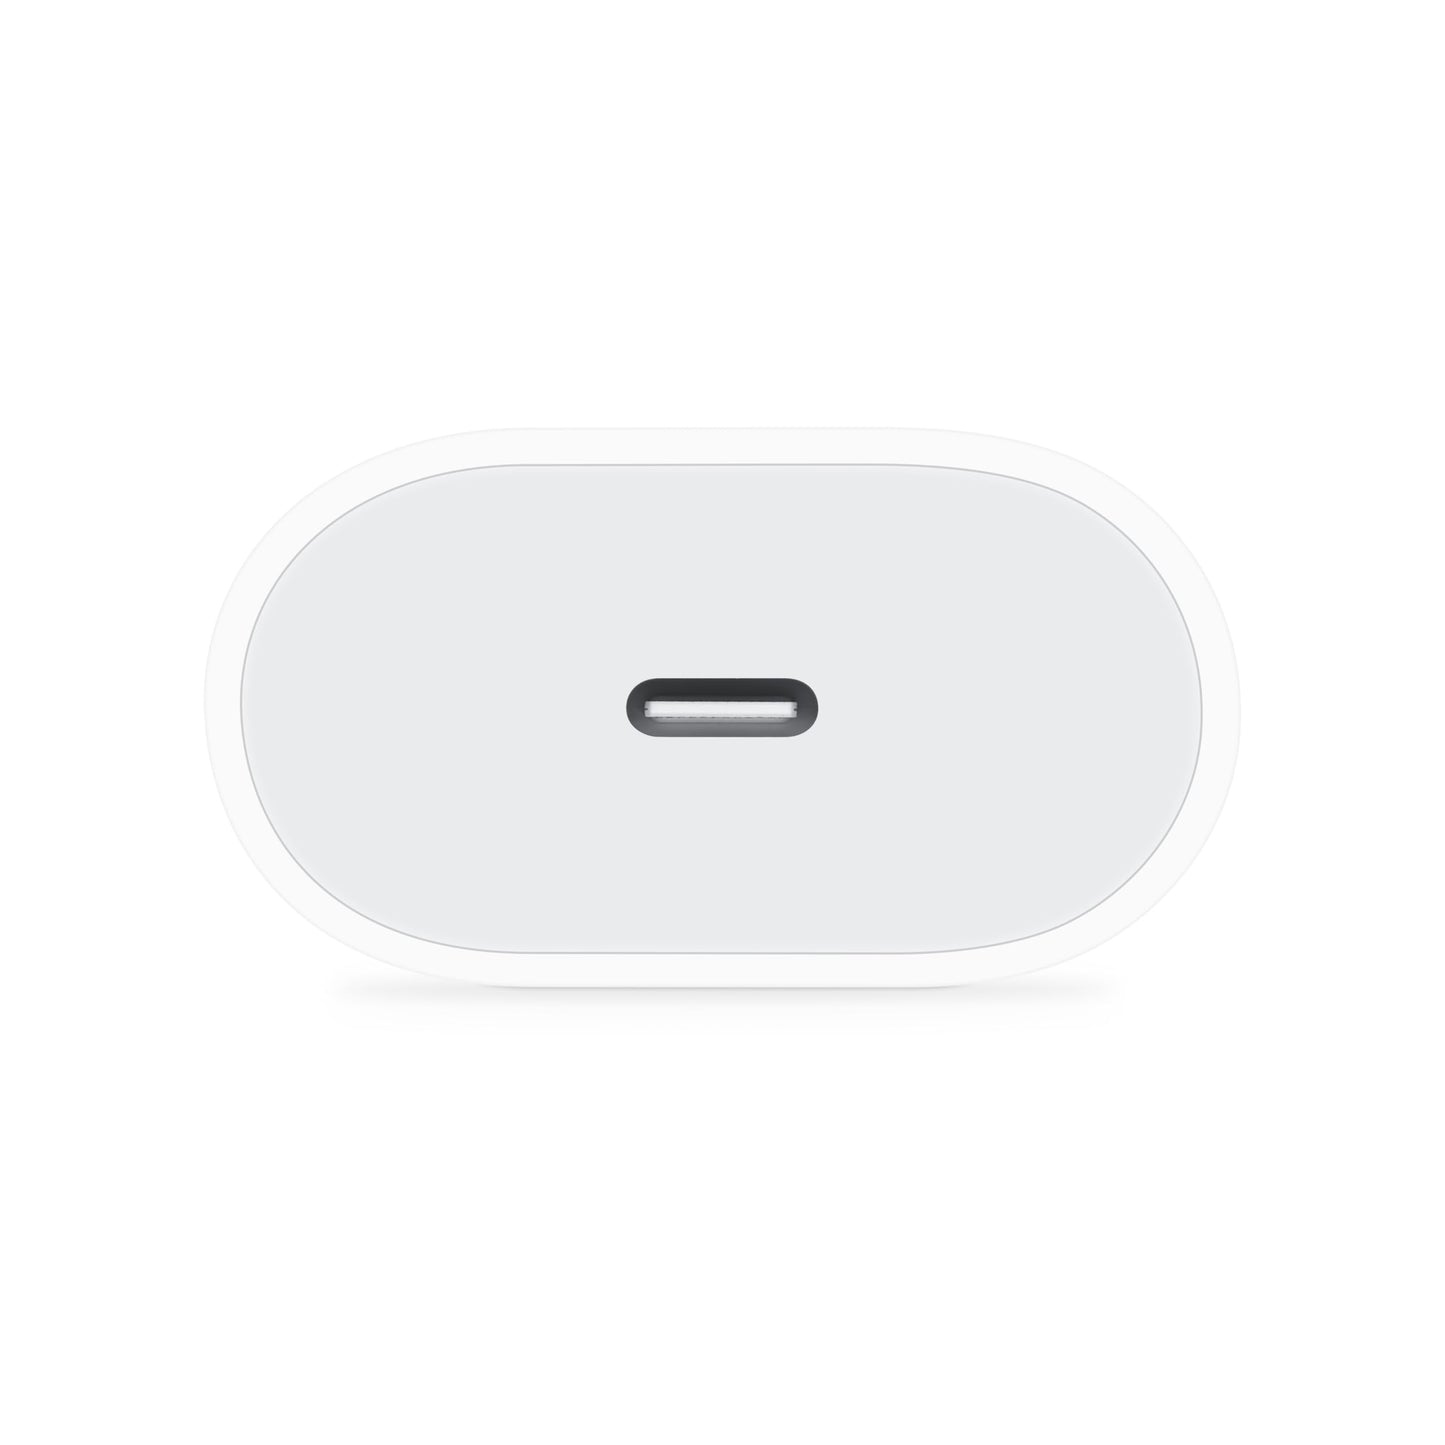 Apple Adaptateur Secteur USB‑C 20 W